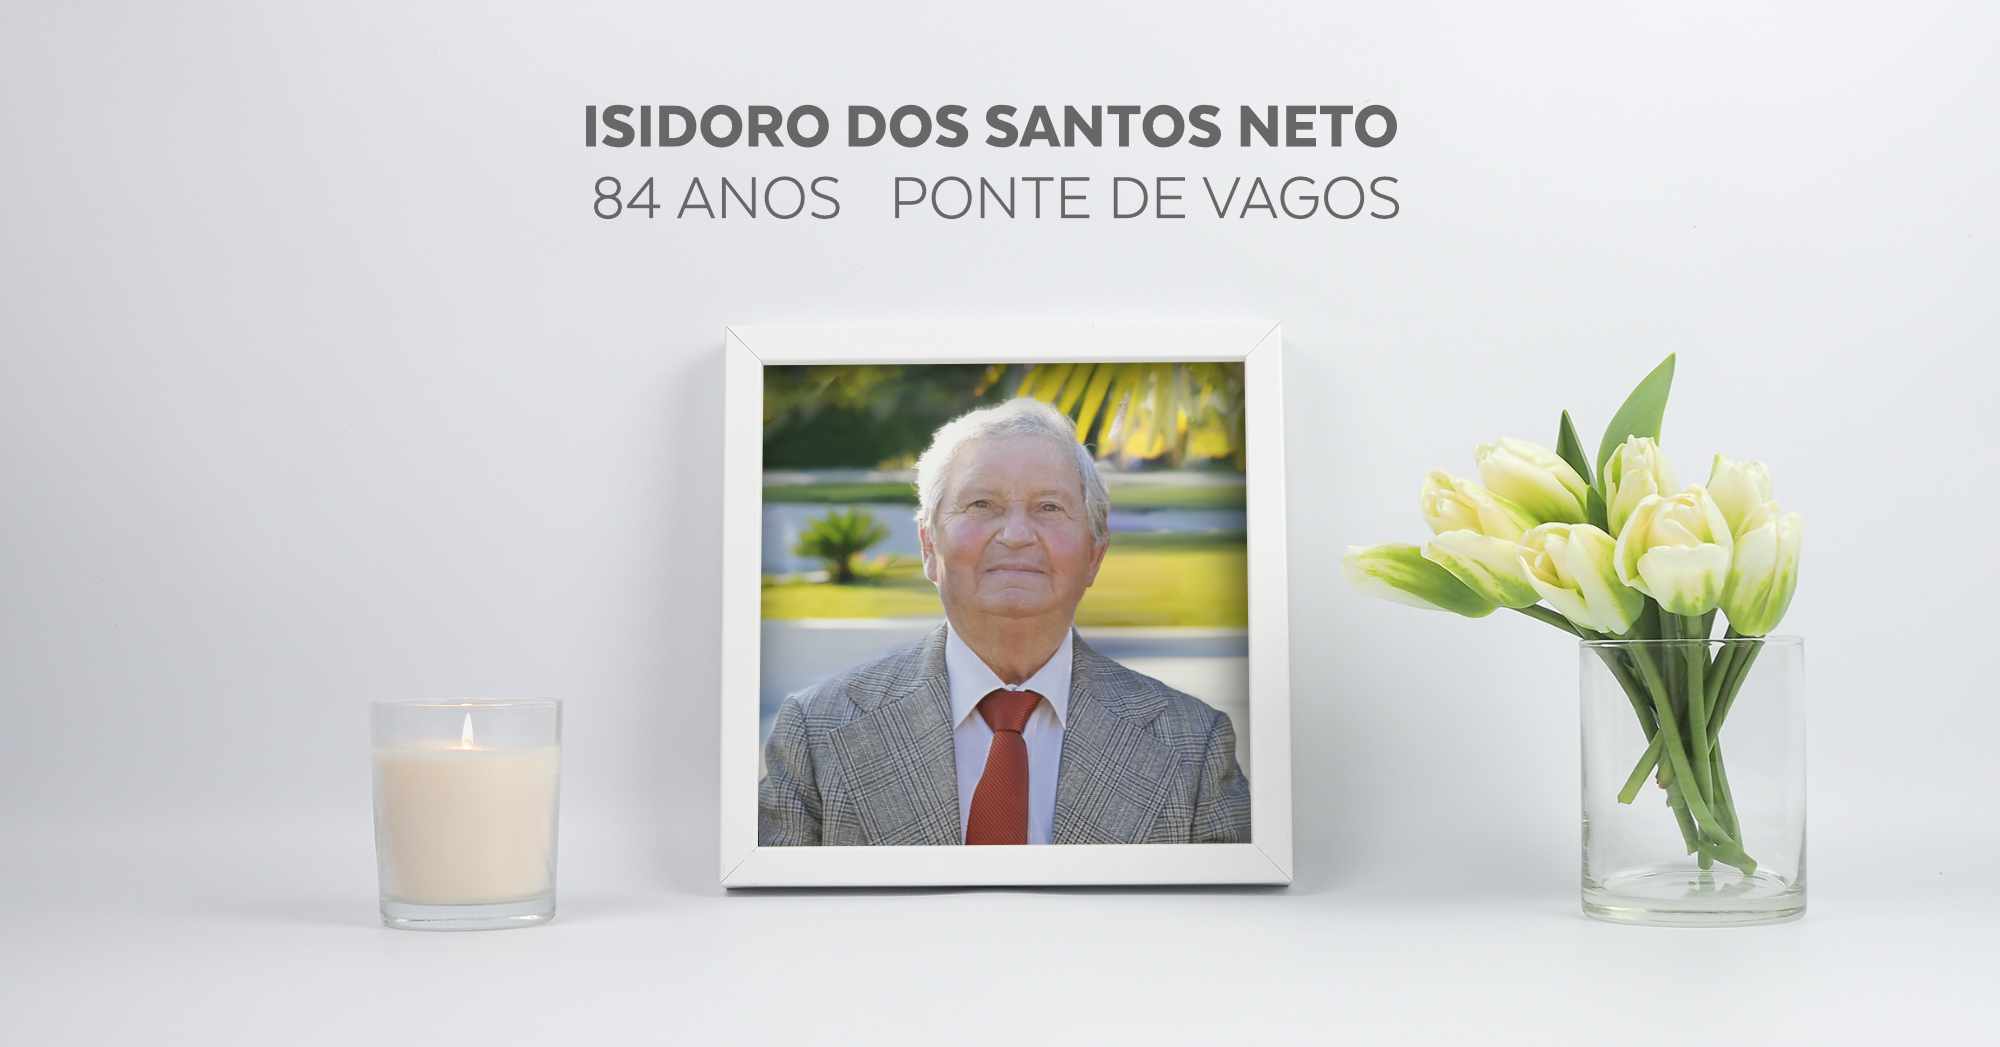 Isidoro dos Santos Neto